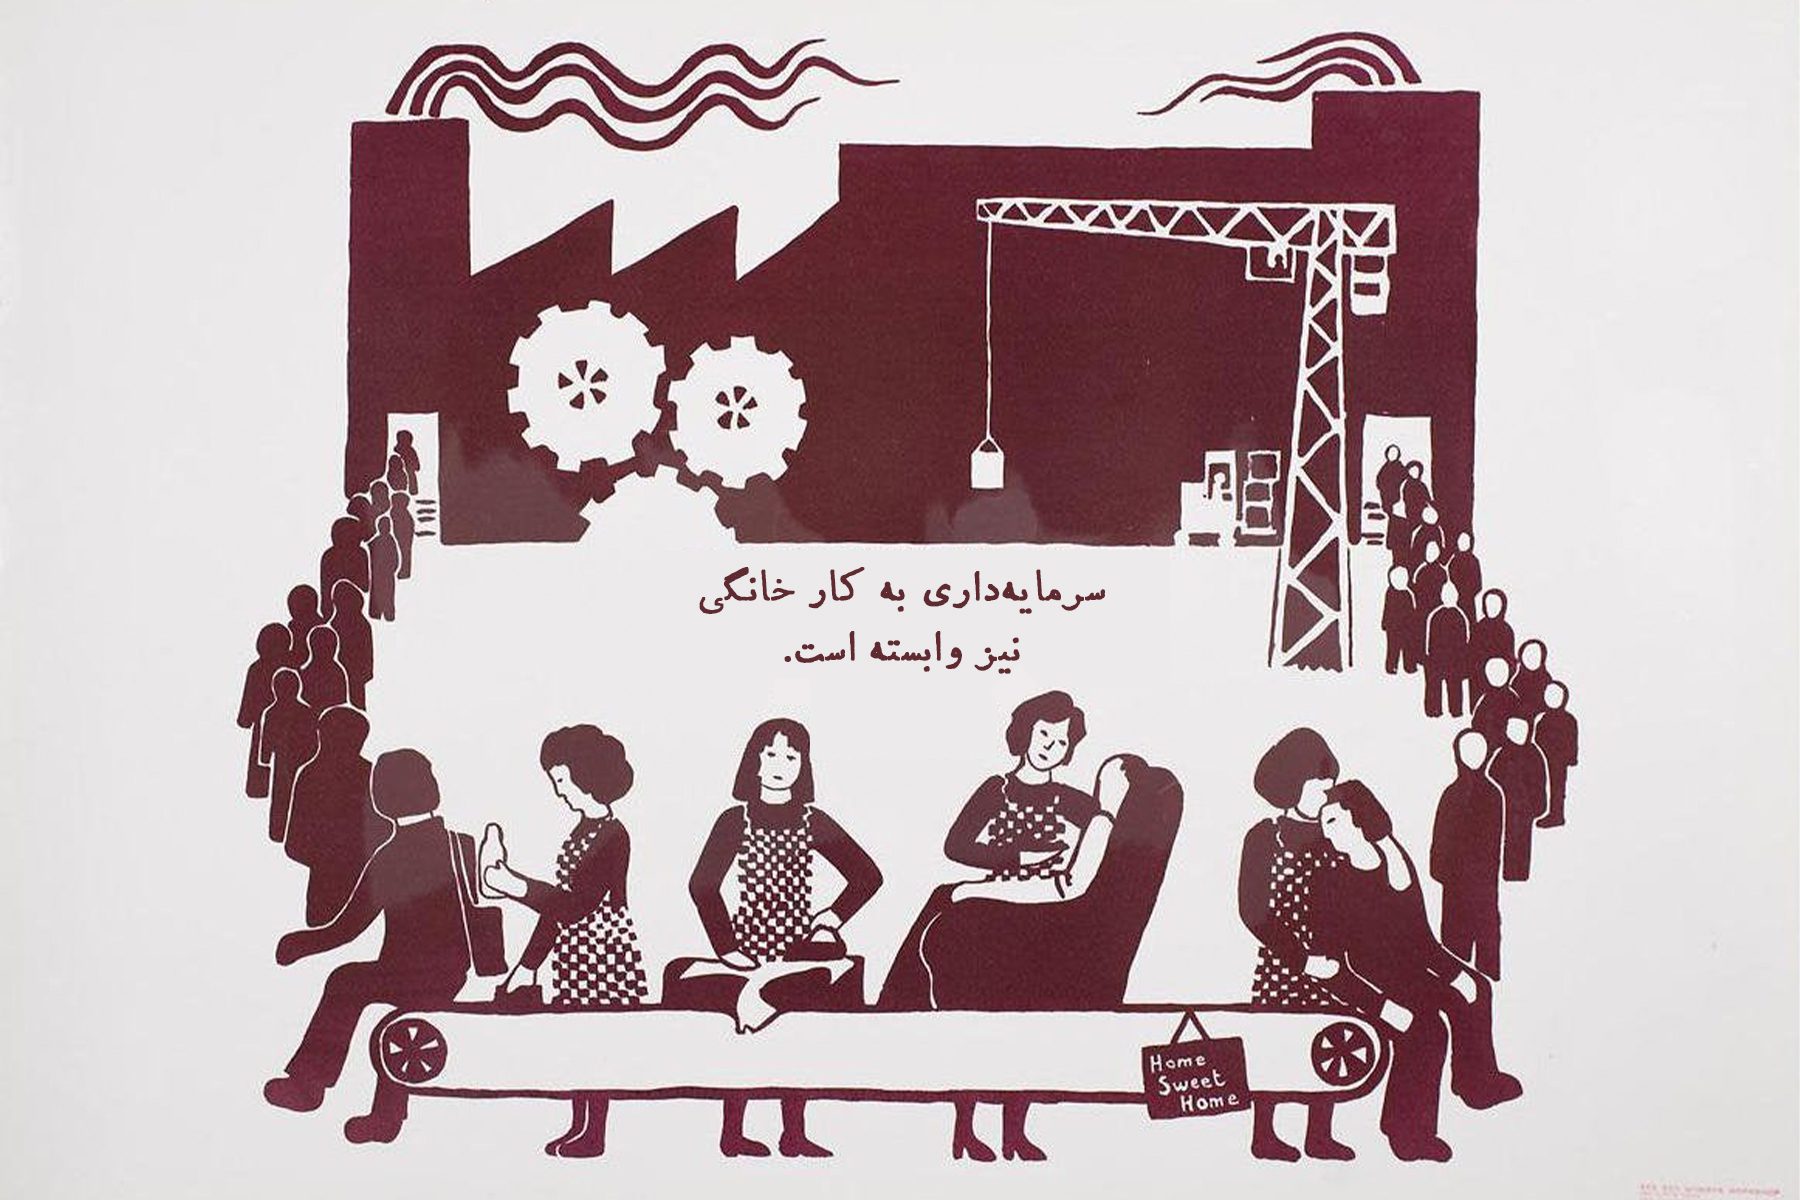 مزد علیه کار خانگی (1975)